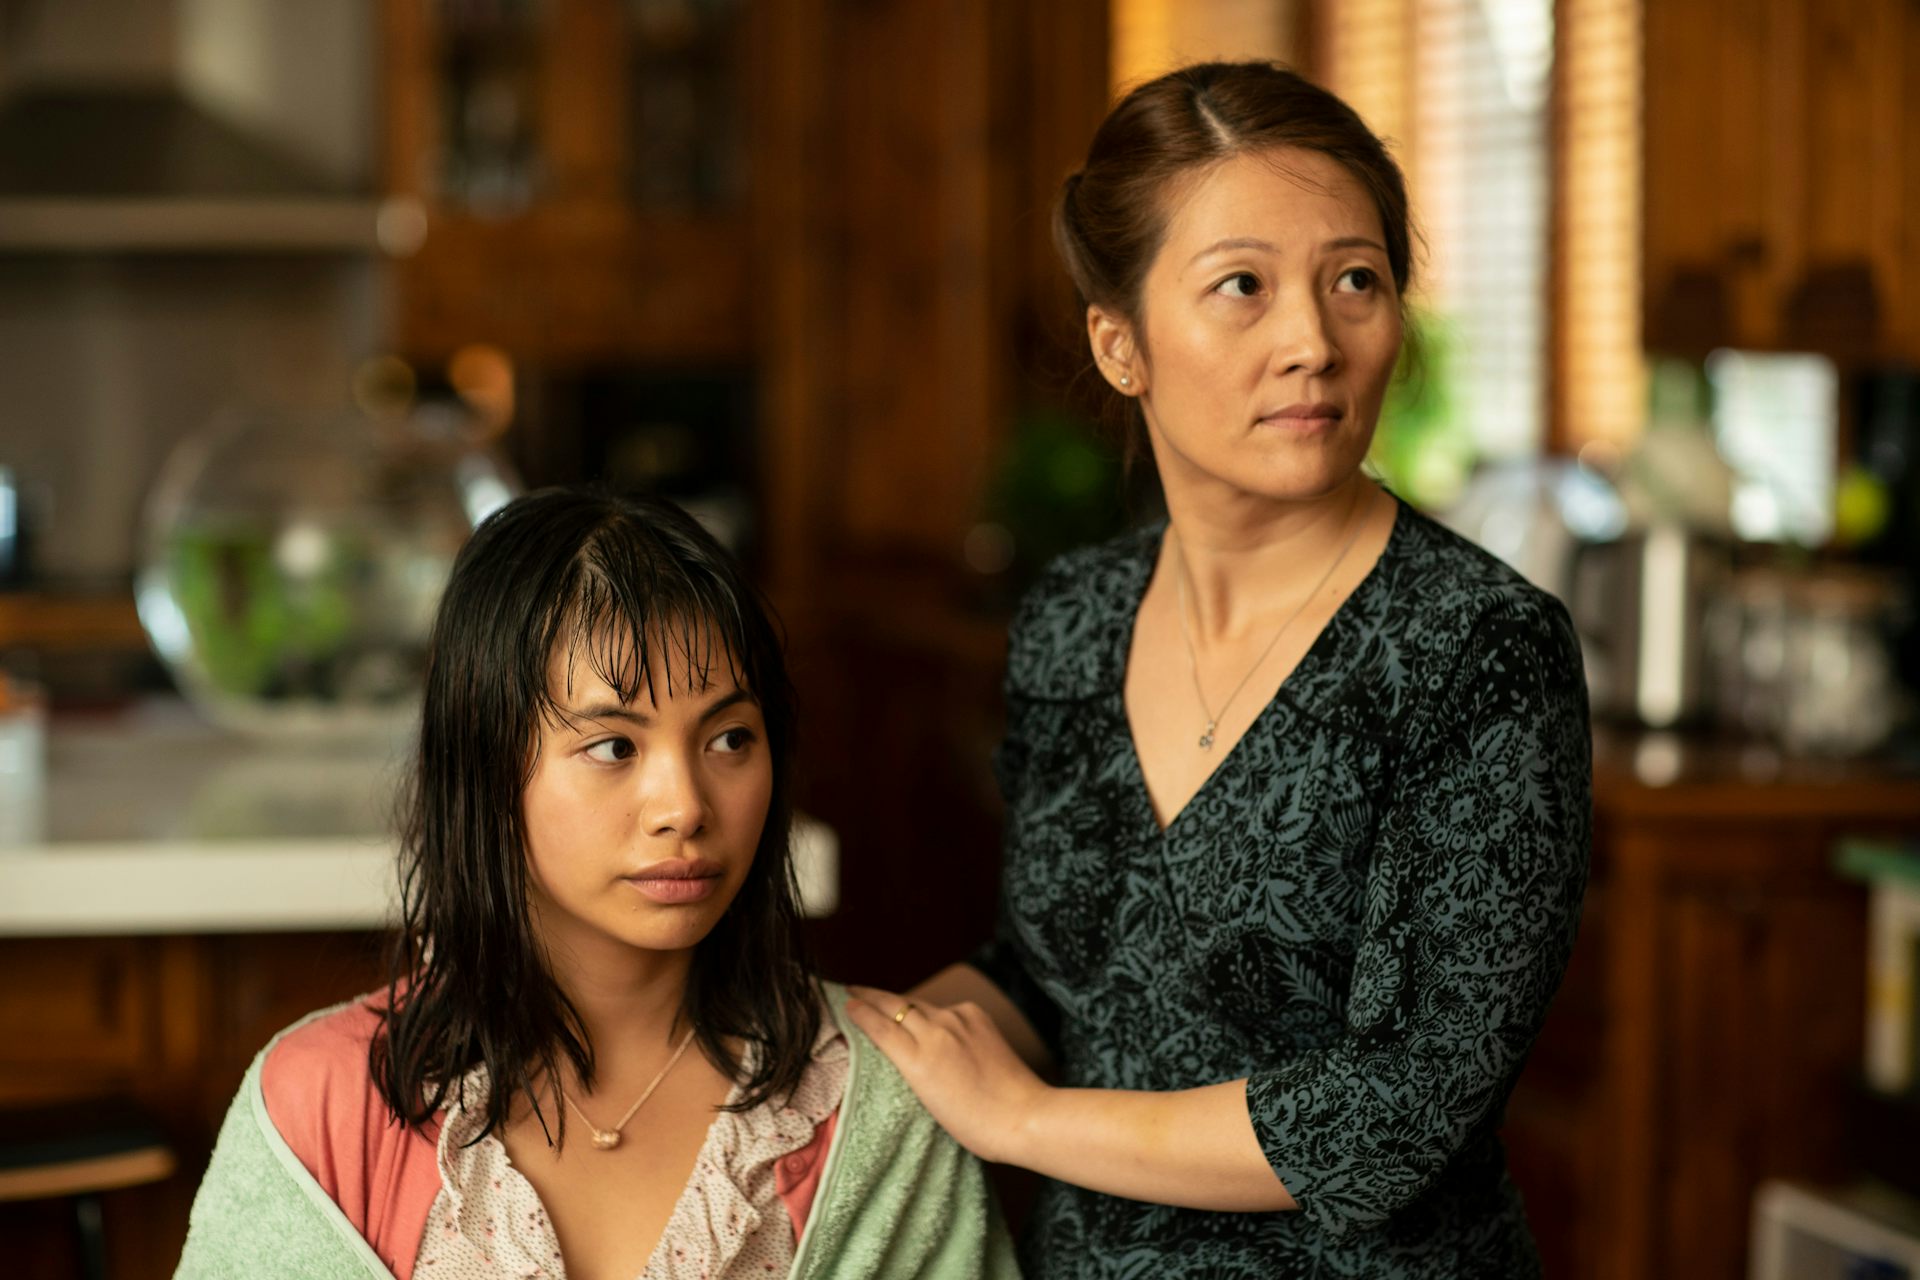 Filmstill von zwei asiatischen Frauen.